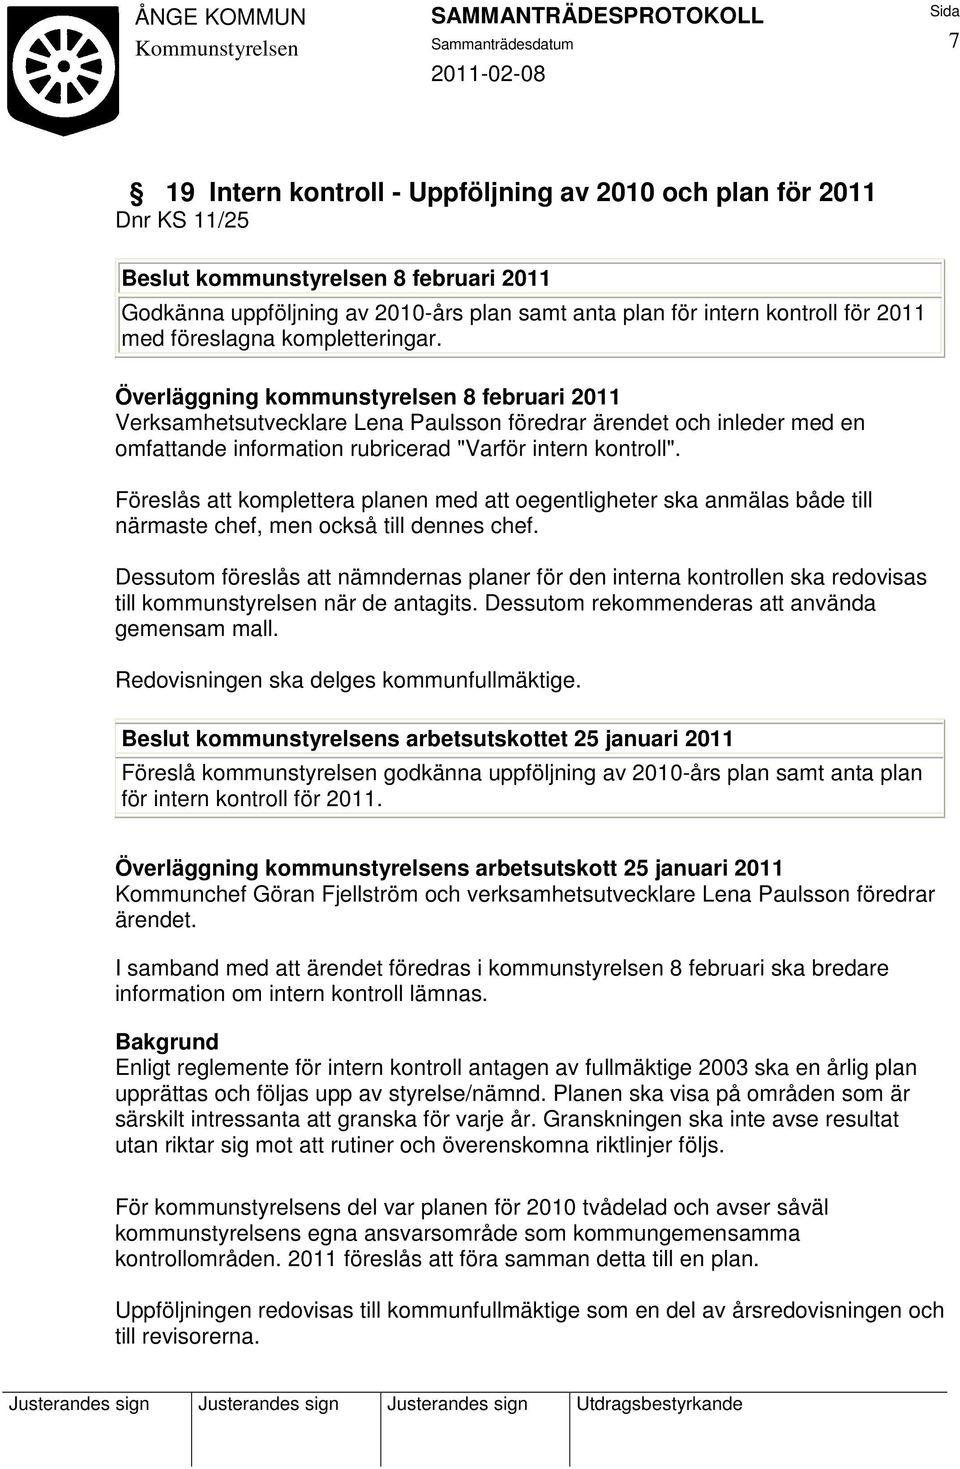 Överläggning kommunstyrelsen 8 februari 2011 Verksamhetsutvecklare Lena Paulsson föredrar ärendet och inleder med en omfattande information rubricerad "Varför intern kontroll".